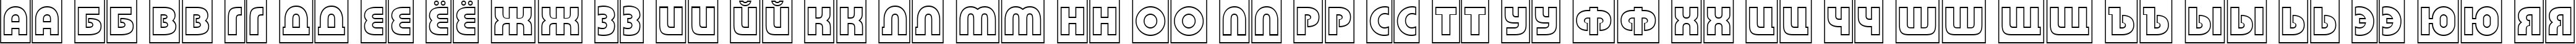 Пример написания русского алфавита шрифтом a_BighausTitulCmGr